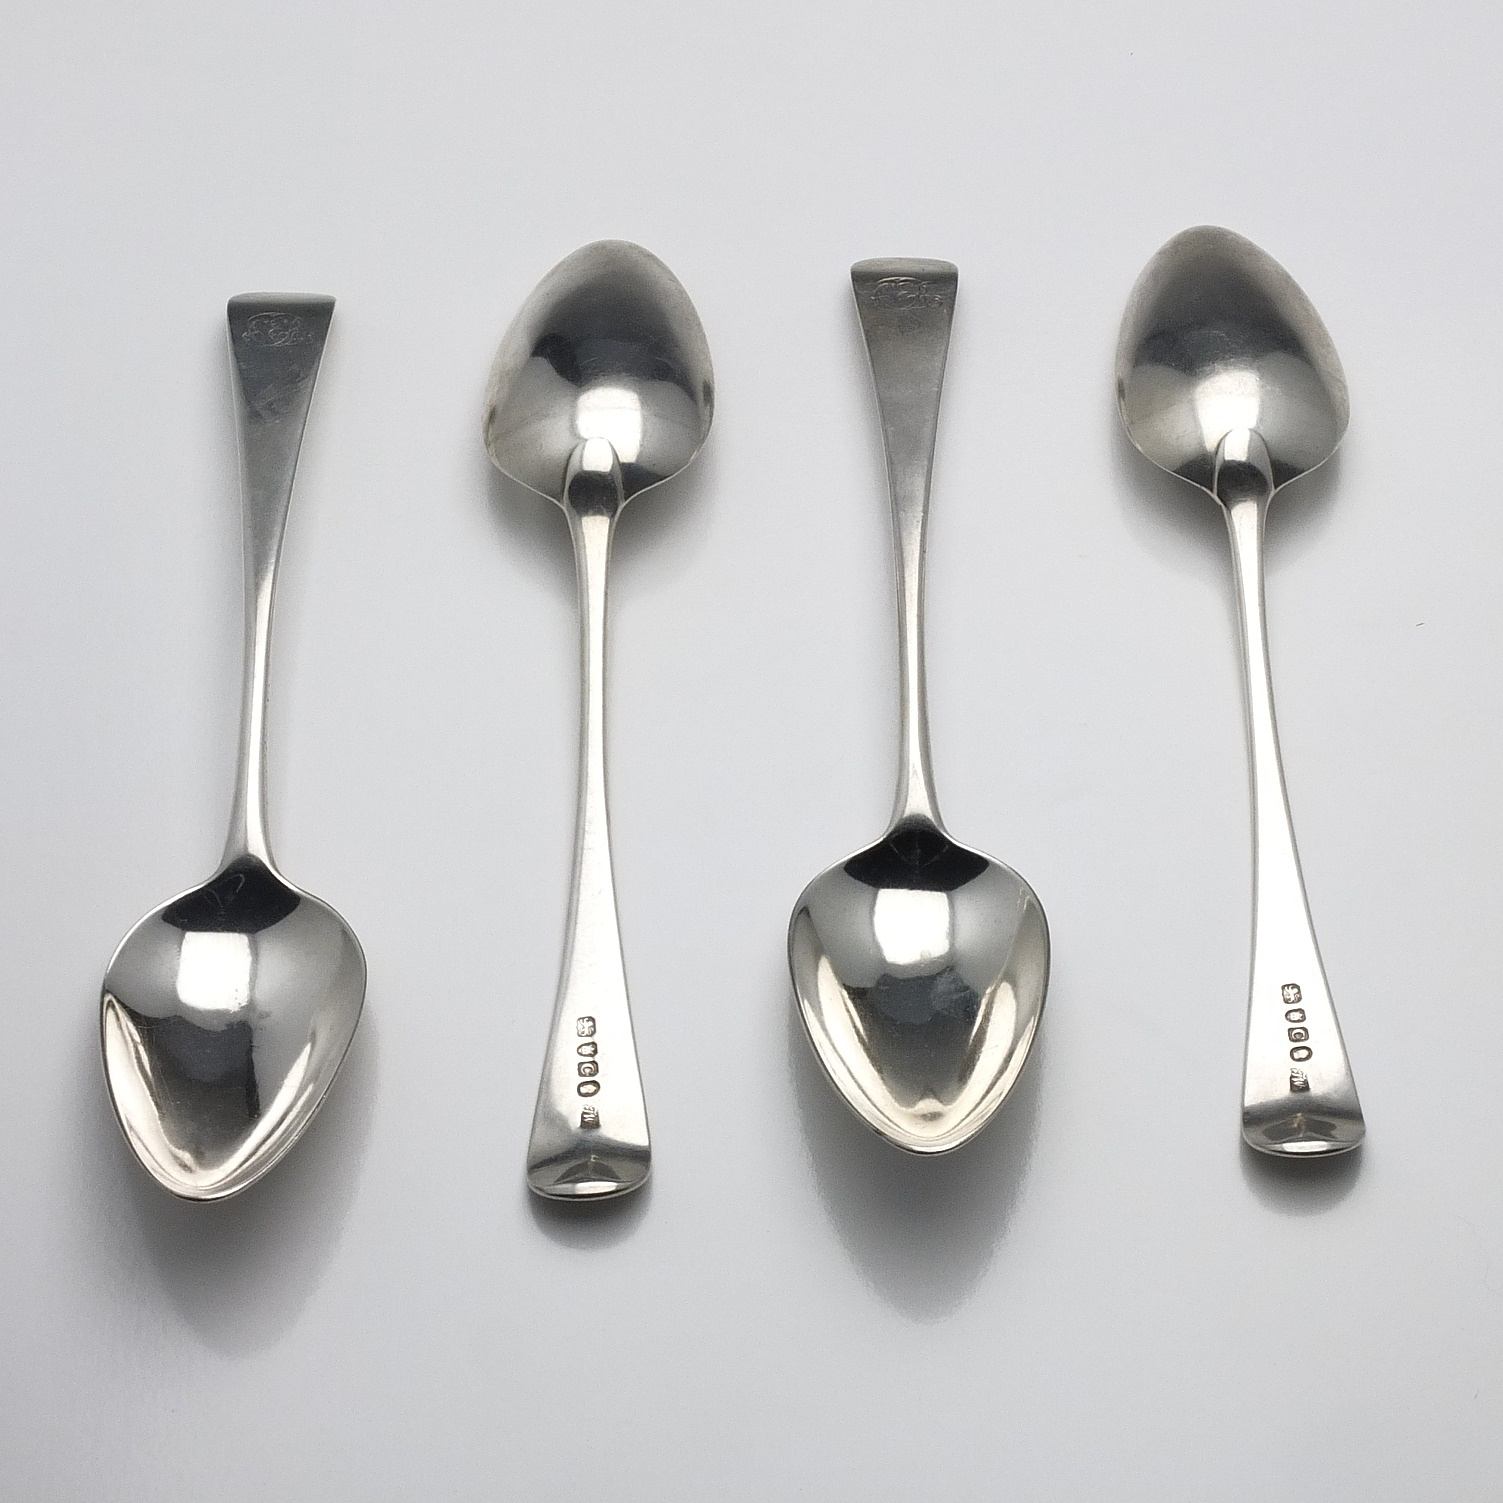 'Four George III Monogrammed Sterling Silver Table Spoons Thomas Wallis II London 1798'